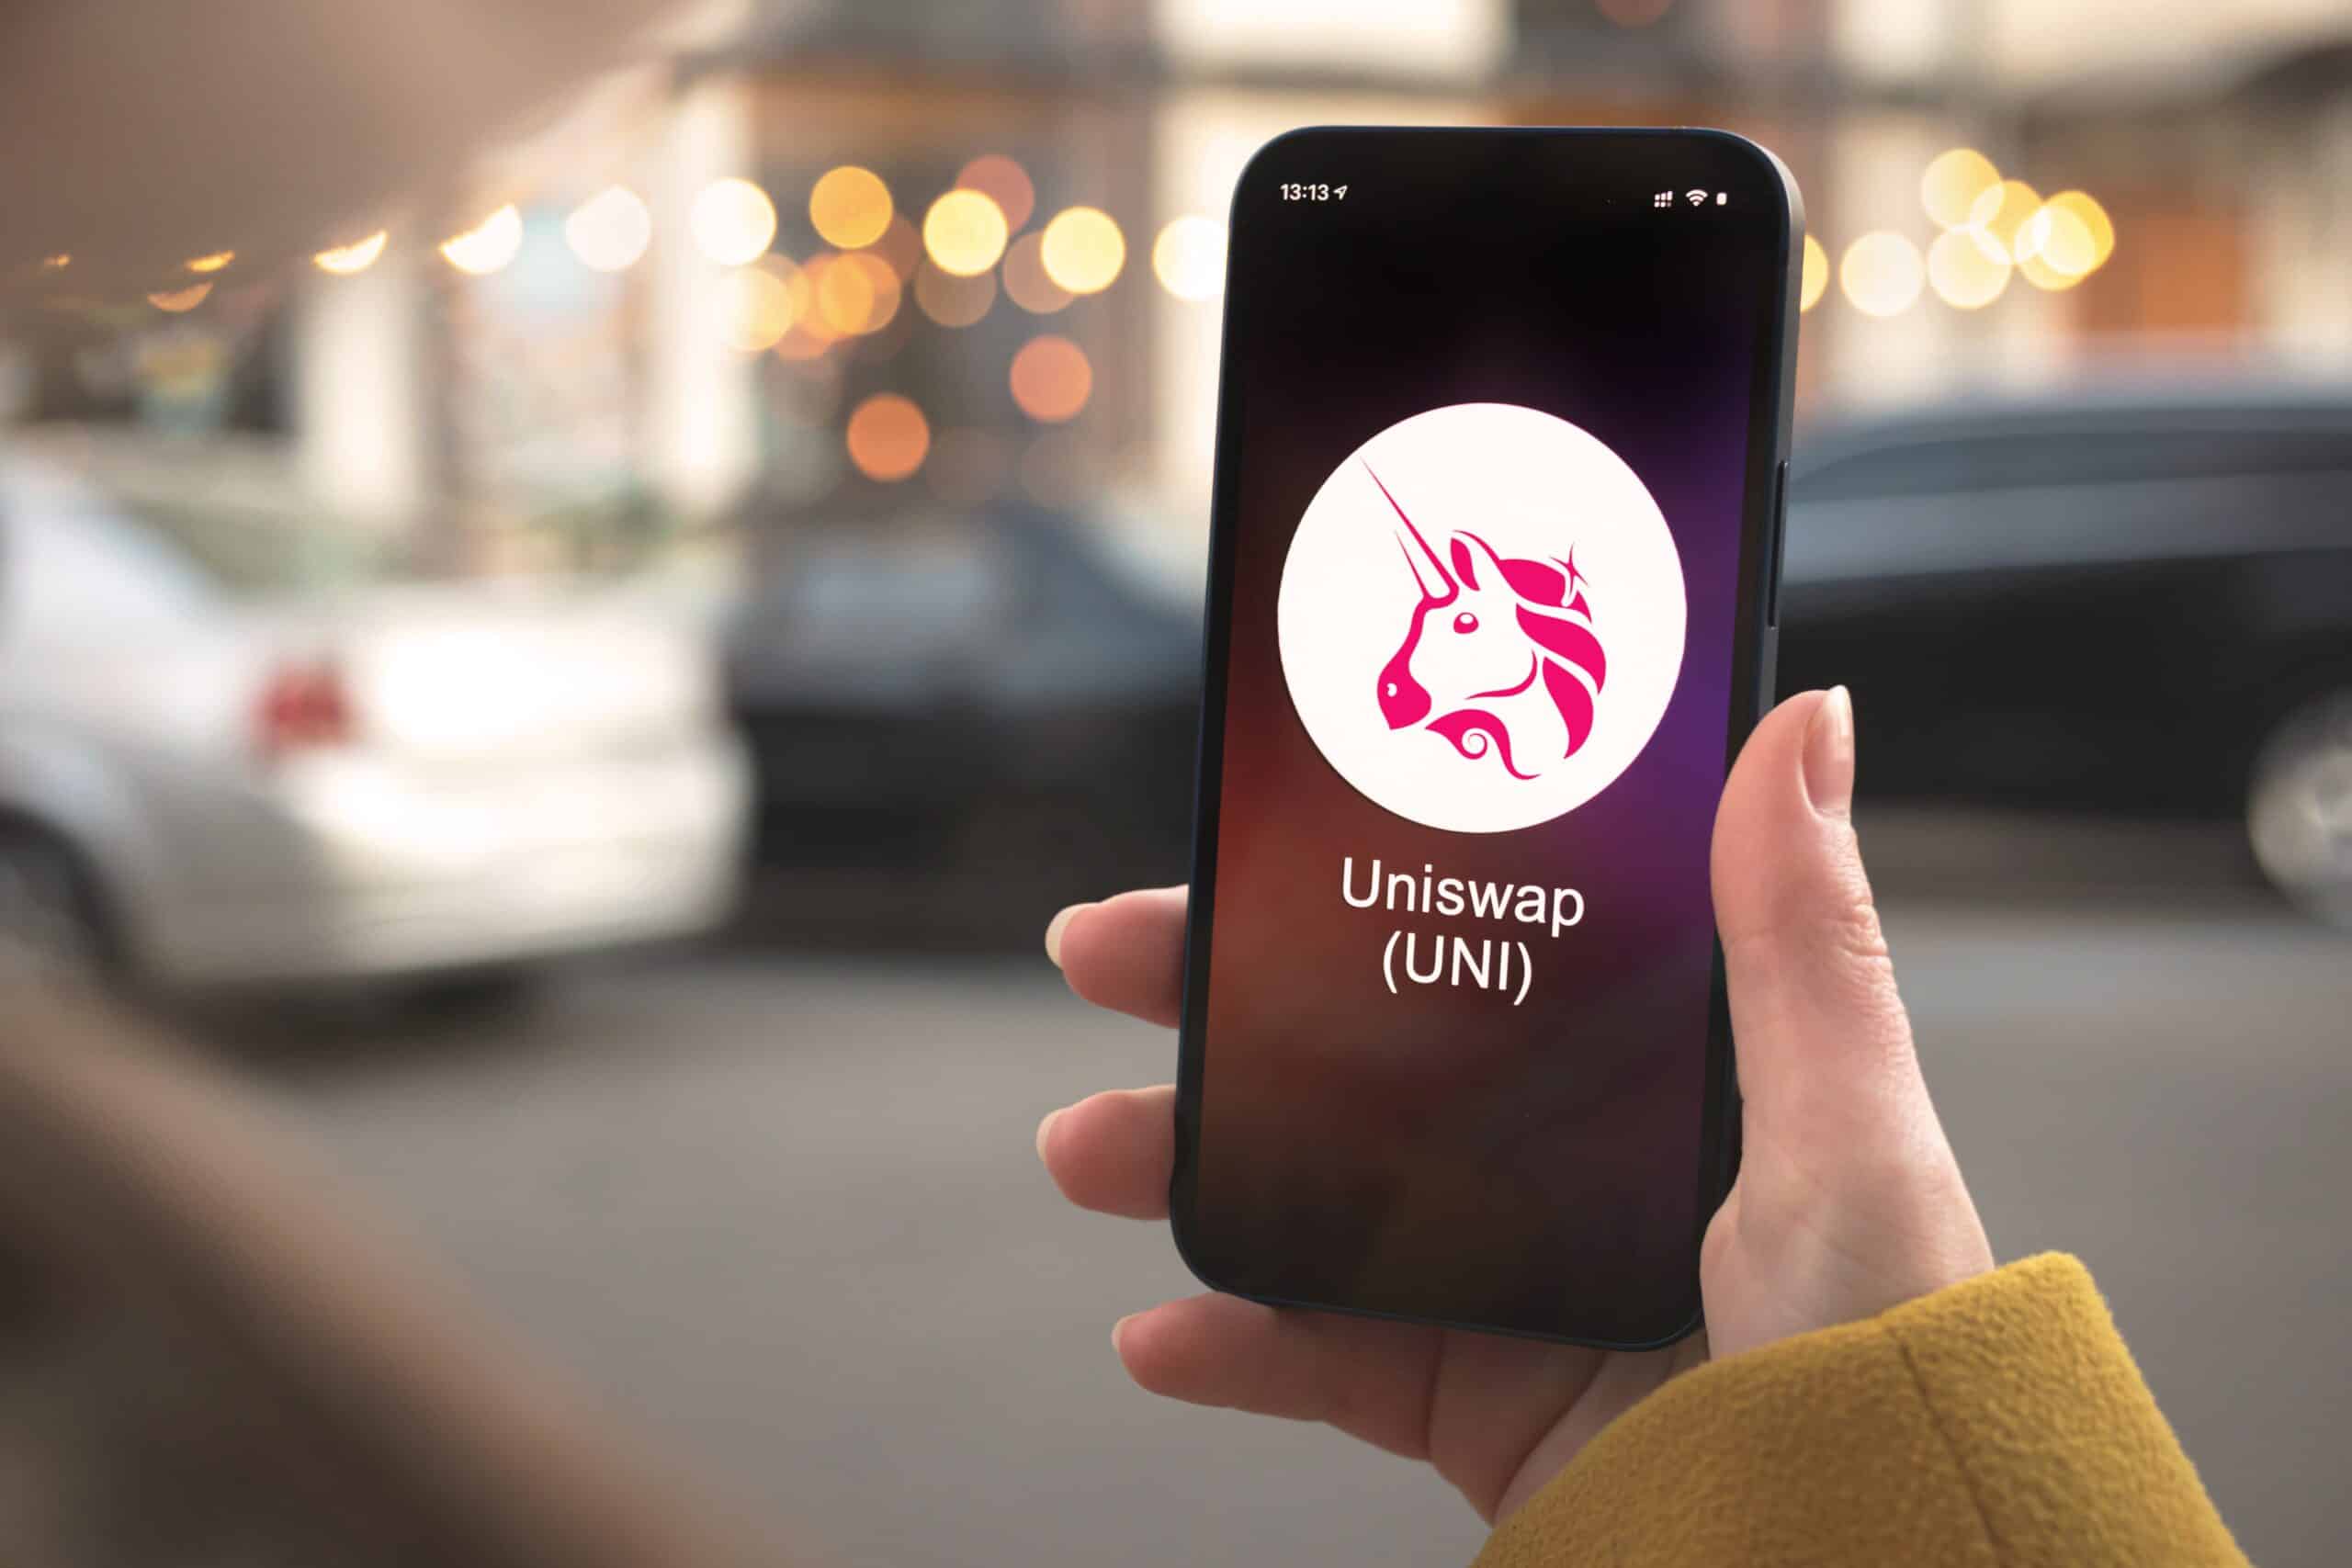 Логотип Uniswap в виде розового единорога отображается на телефоне в руке человека